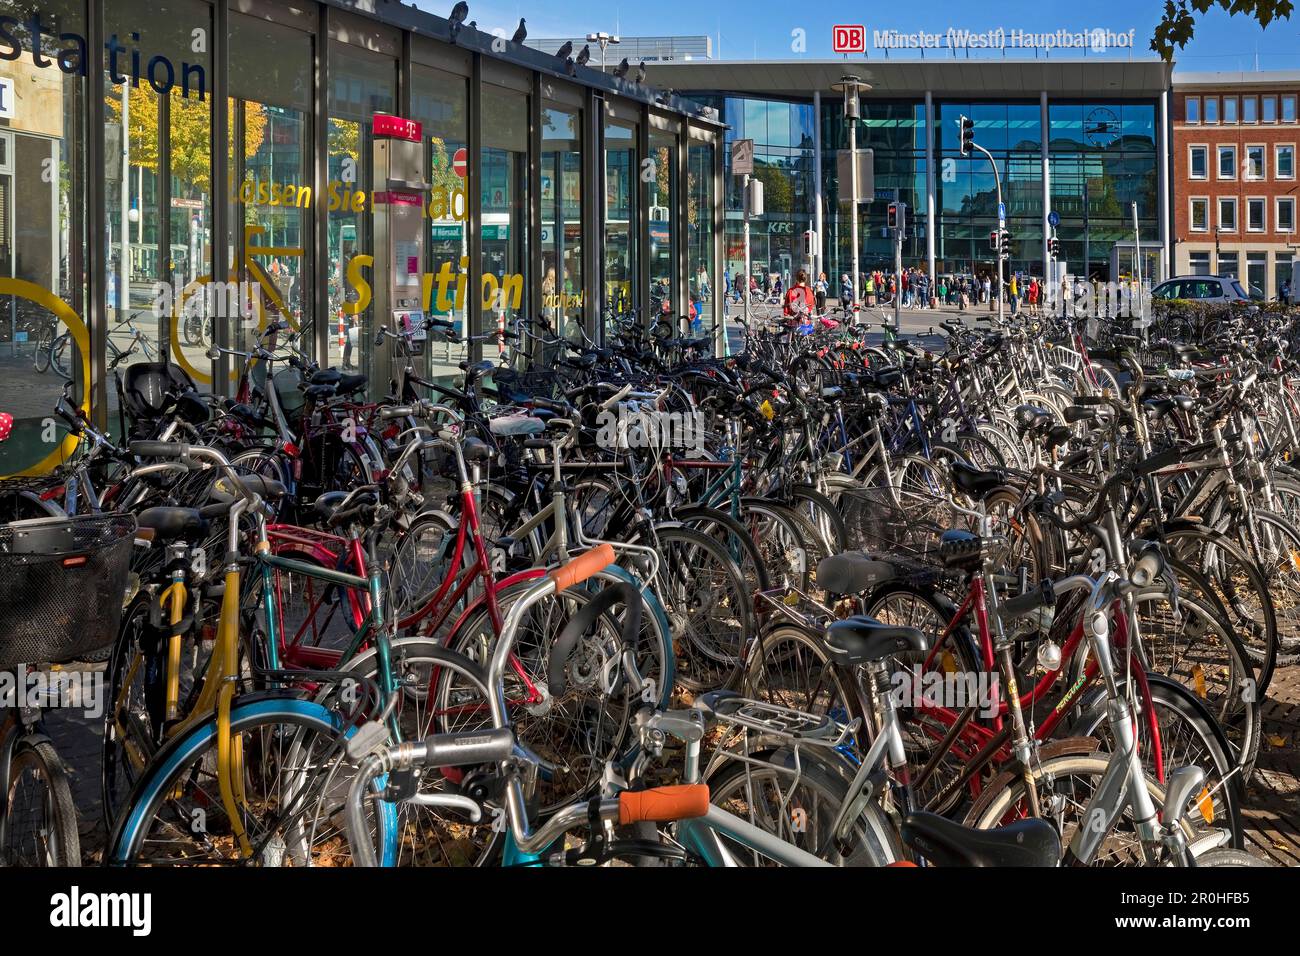 Beaucoup de vélos à la gare principale, Allemagne, Rhénanie-du-Nord-Westphalie, Munster Banque D'Images